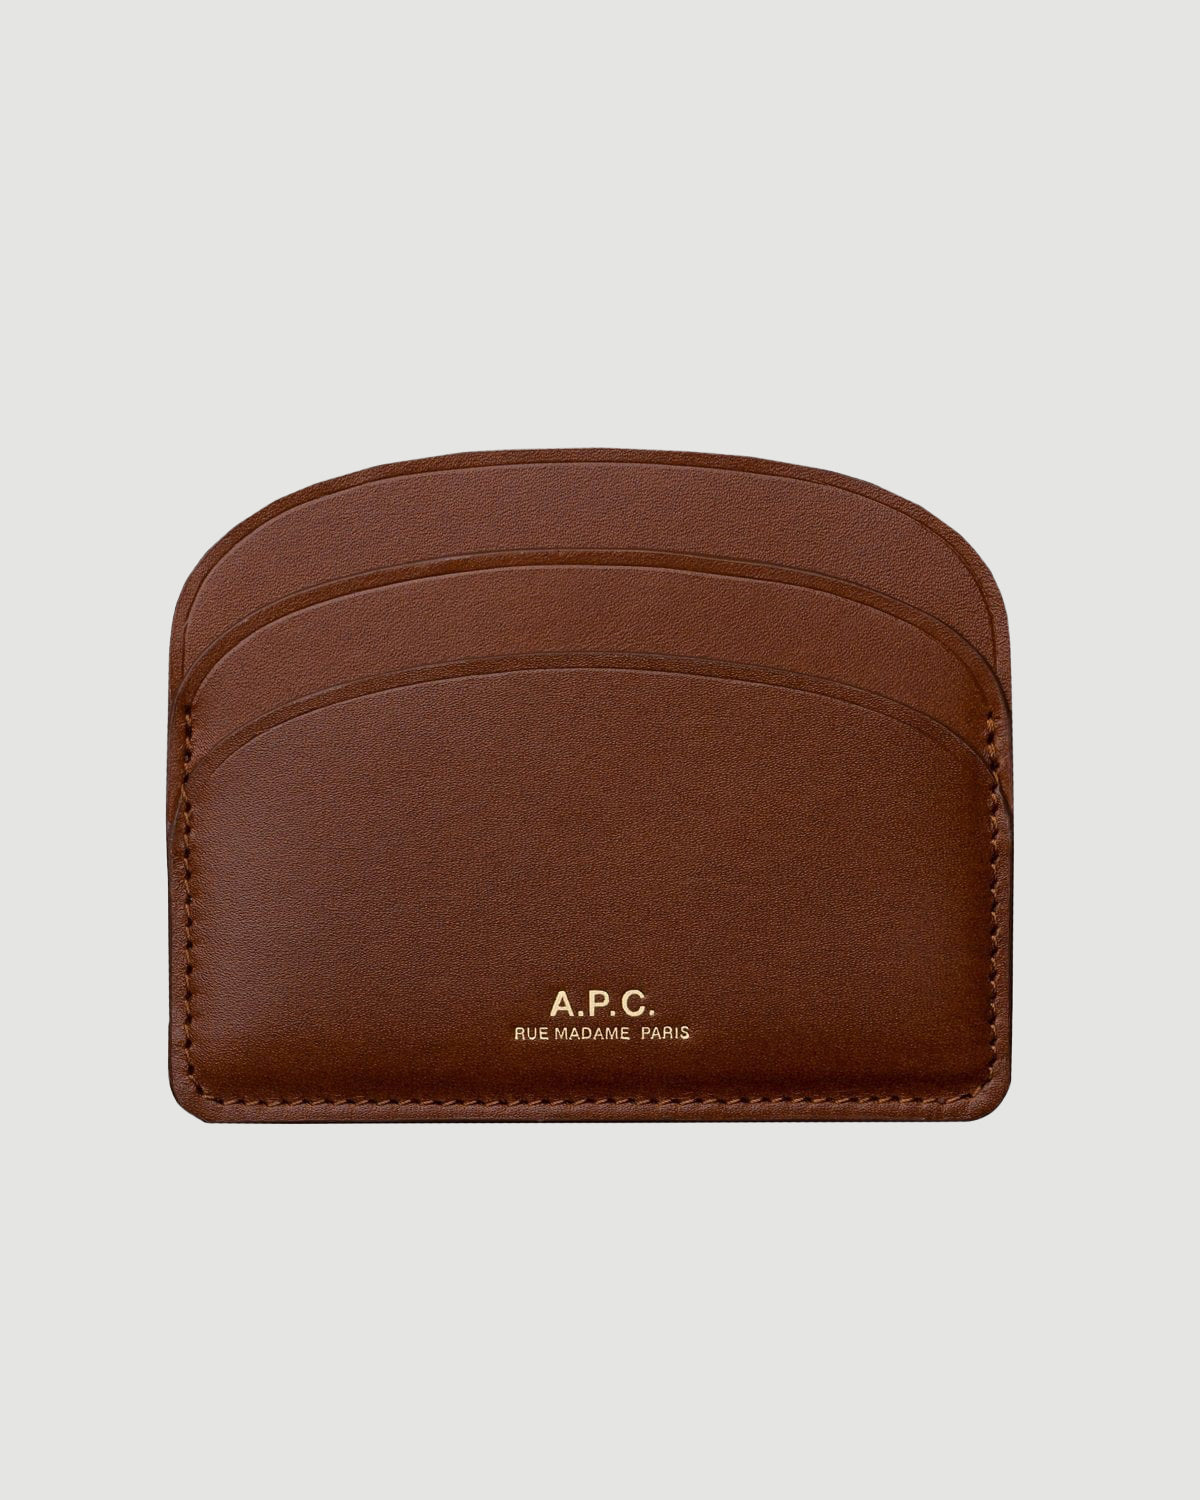 A.P.C. Demi-lune Porte-cartes Noisette Leather Goods